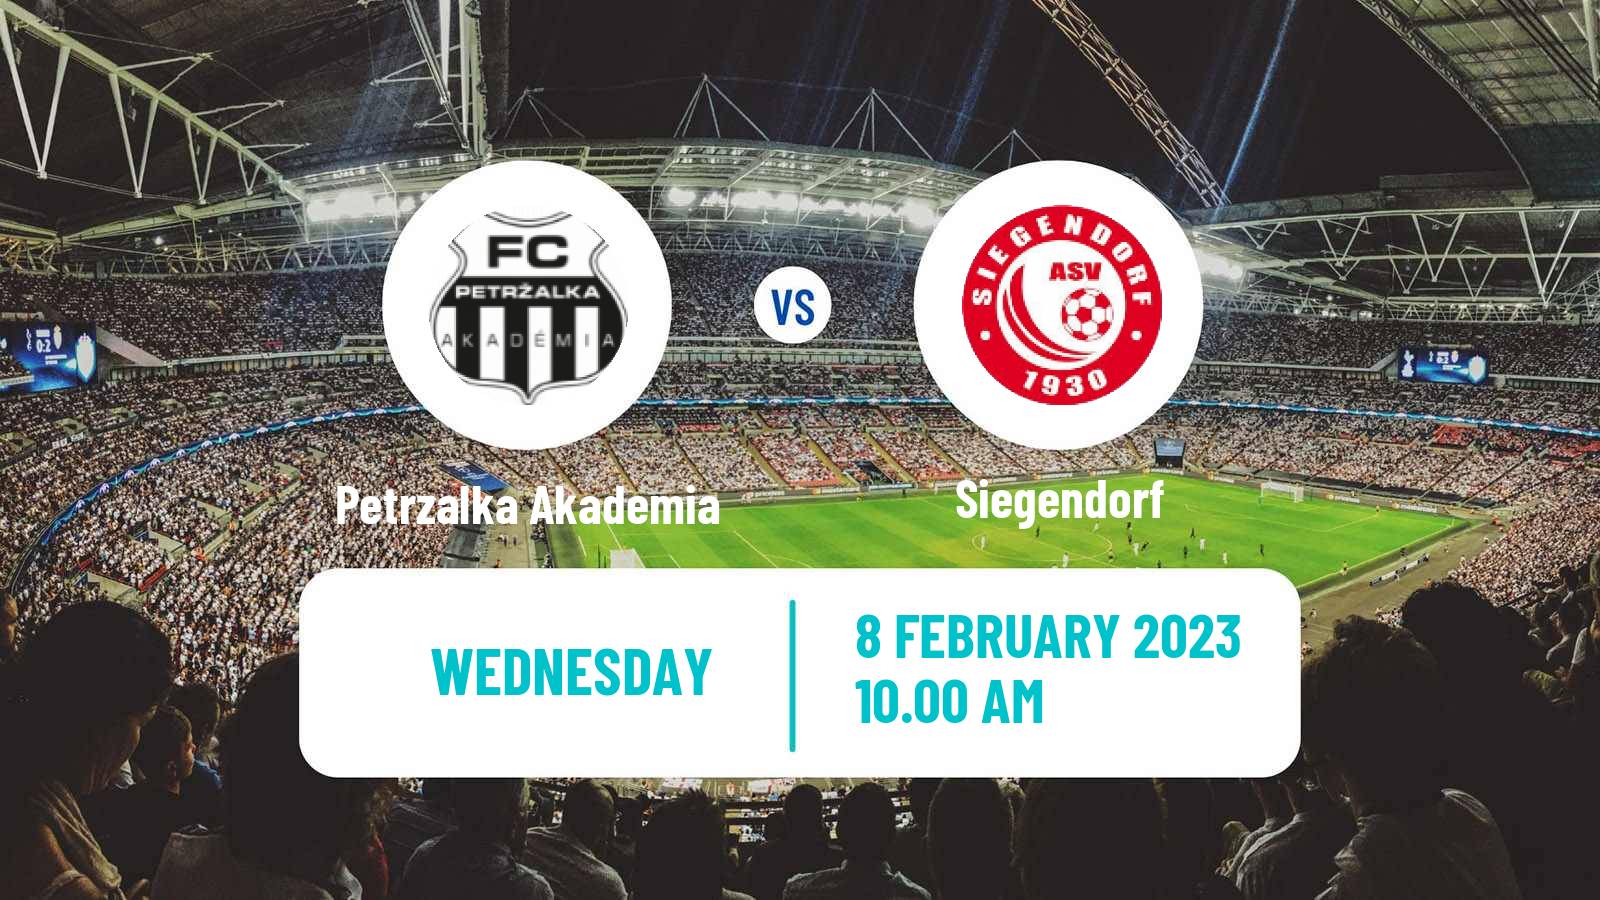 Soccer Club Friendly Petrzalka Akademia - Siegendorf